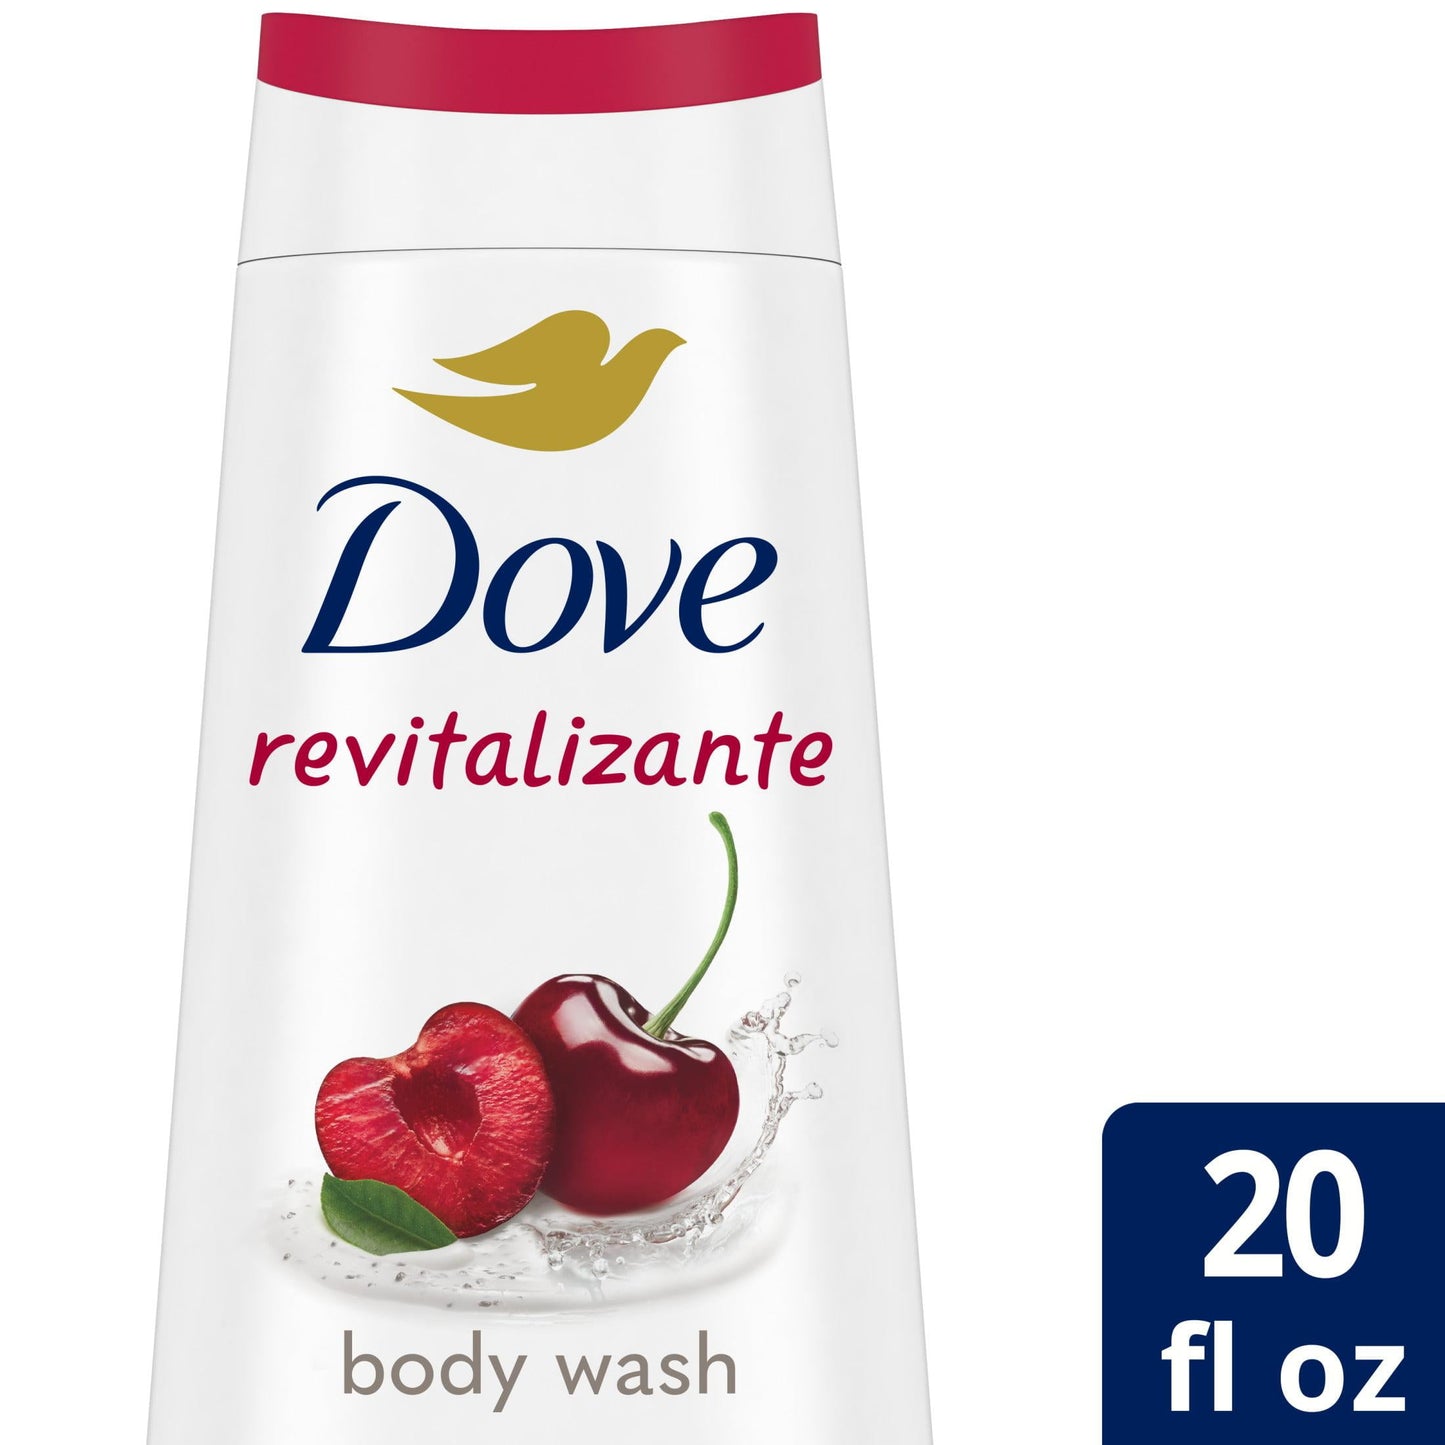 Dove Revitalizante Long Lasting Gentle Body Wash, Cherry and Chia Milk, 20 fl oz